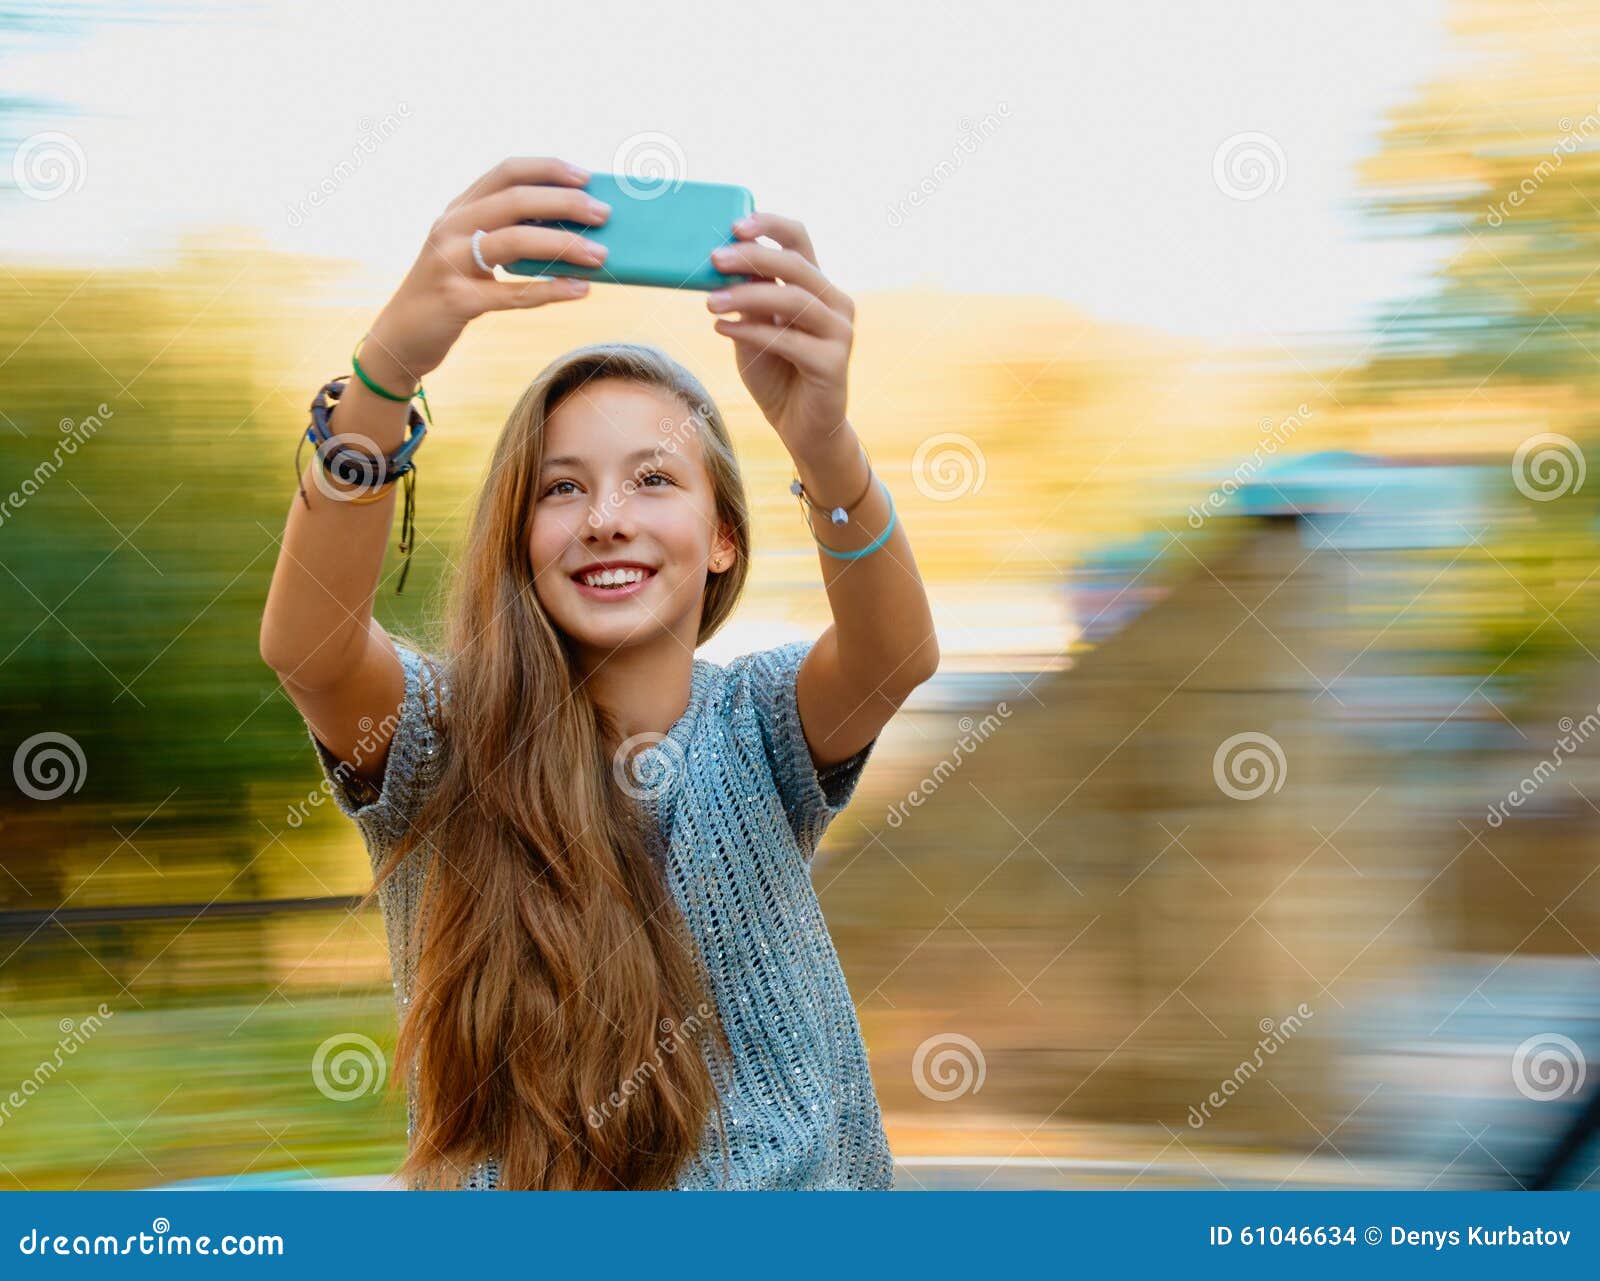 Teen Girl Young Selfie